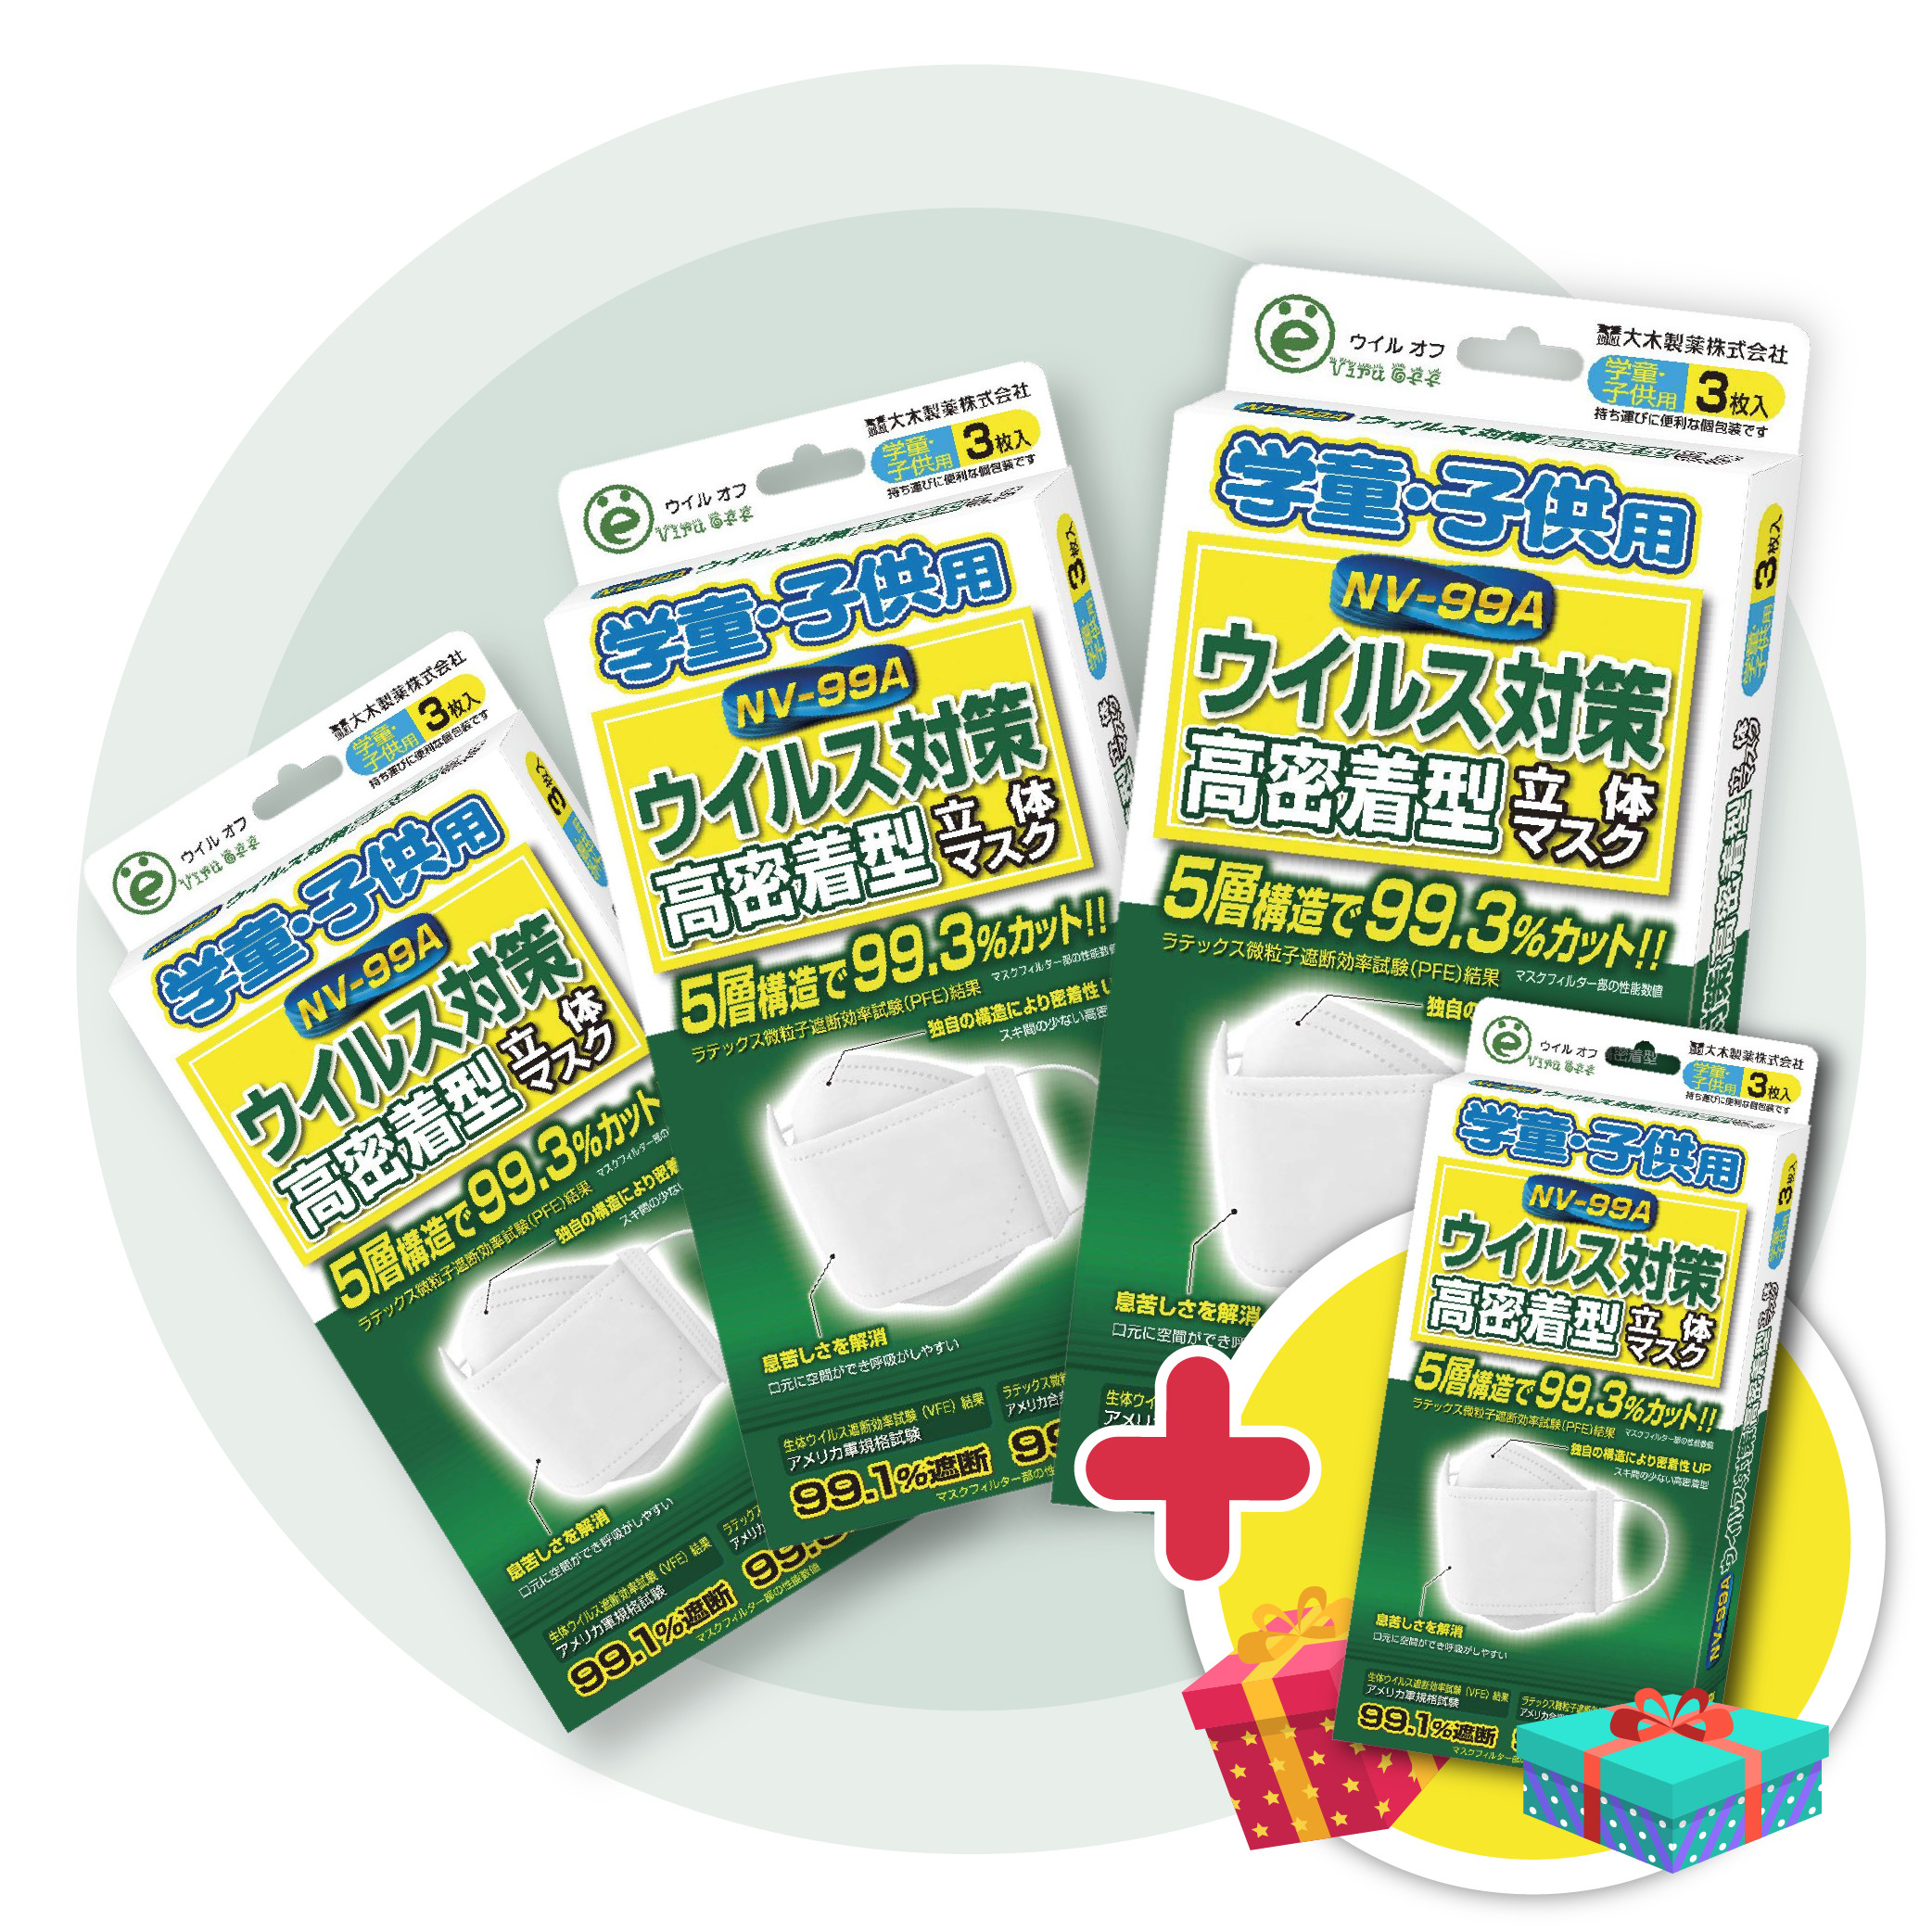 (Mua 3 tặng 1) Combo 3 hộp Khẩu trang trẻ em Virus Off - Ohki Nhật Bản thiết kế 3D ôm sát mặt NV-99A 3 miếng